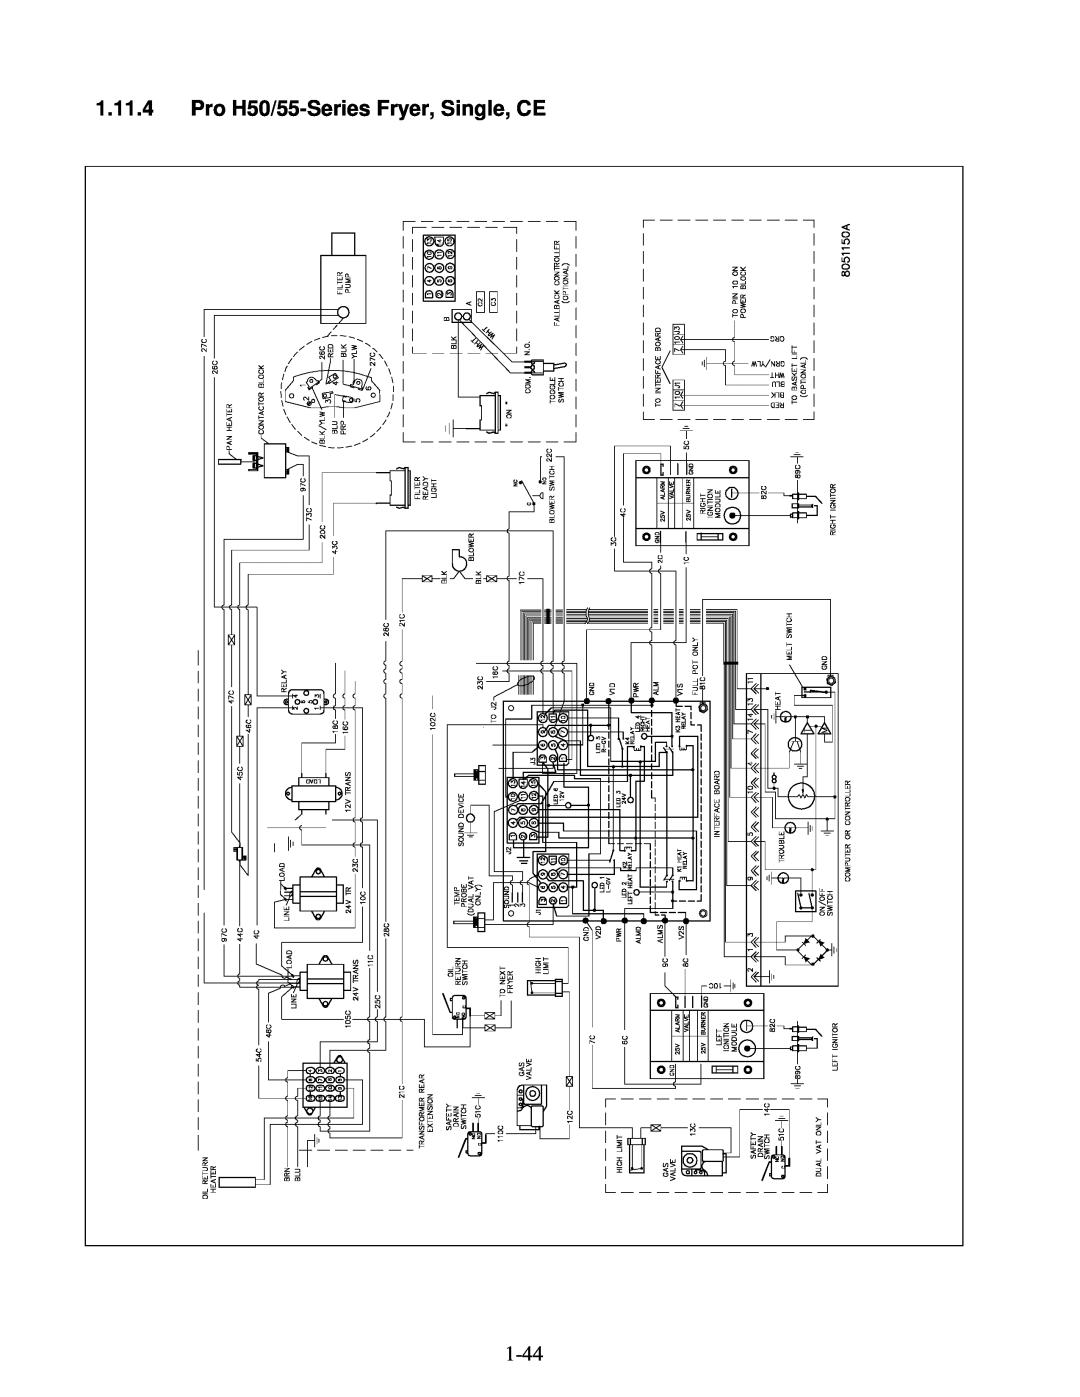 Frymaster manual 1.11.4Pro H50/55-SeriesFryer, Single, CE 